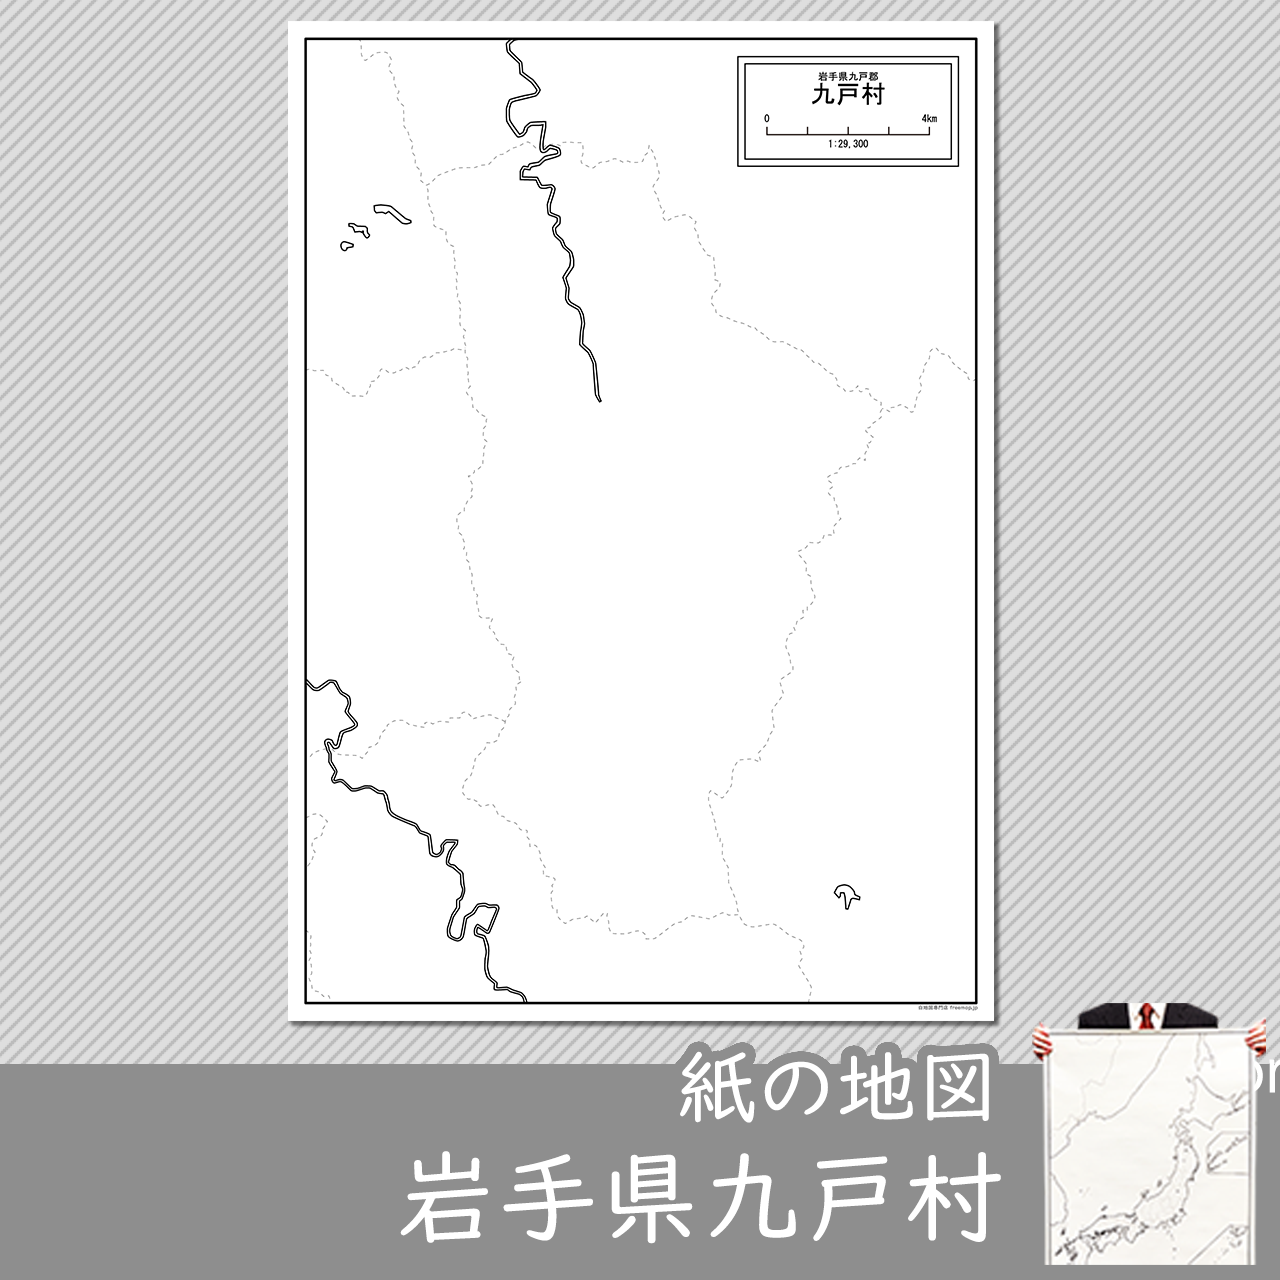 九戸村の紙の白地図のサムネイル